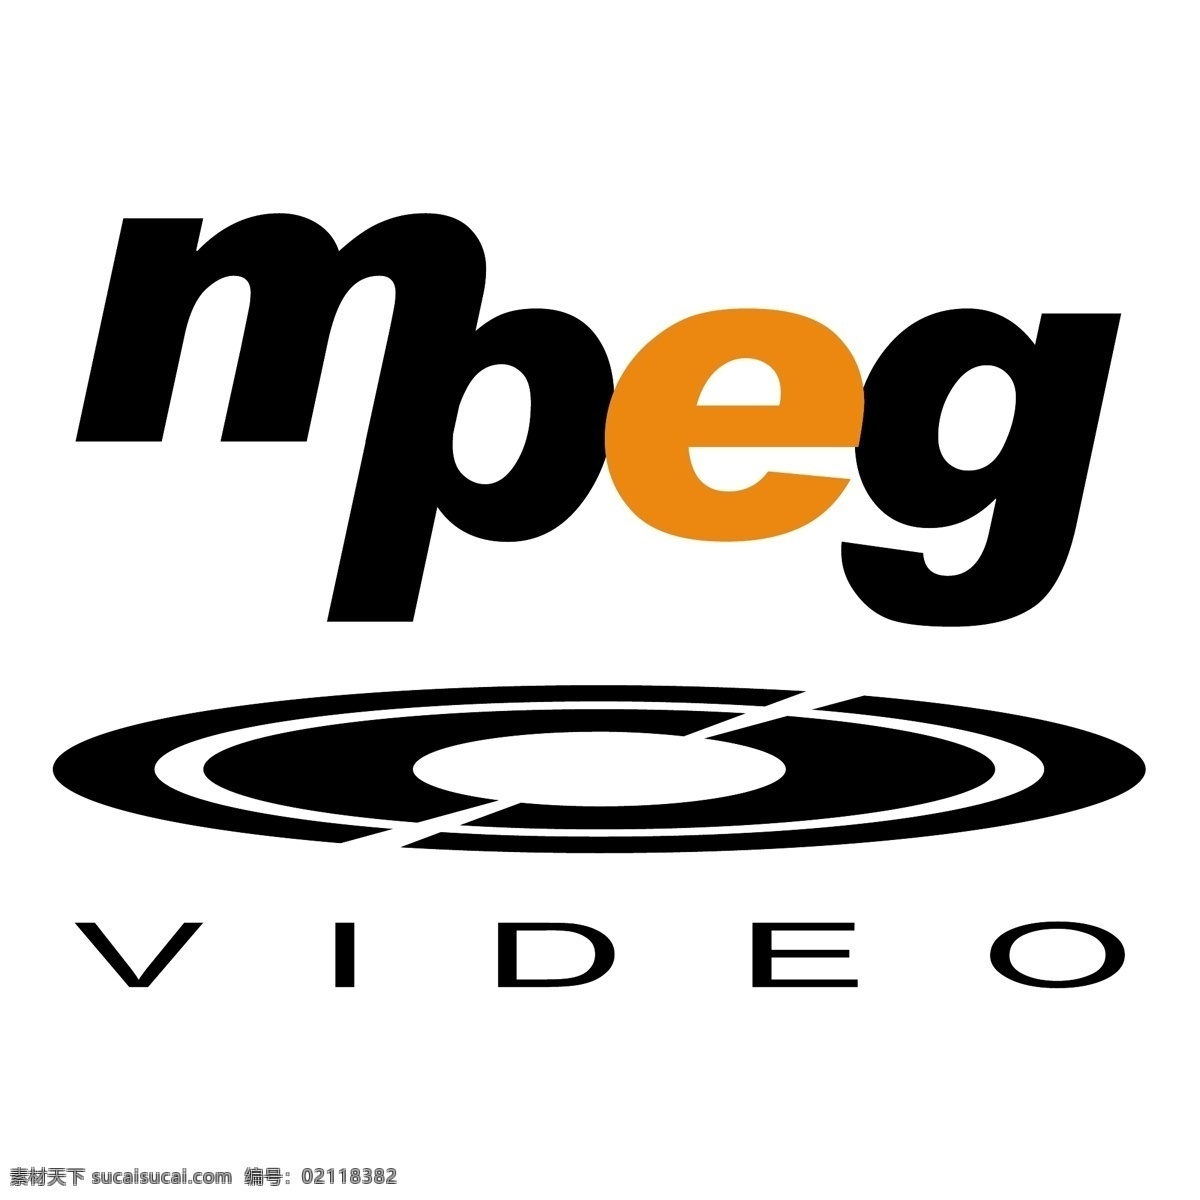 视频 图形 mpeg mpeg视频 矢量 视频艺术 载体 视频设计 免费视频下载 免费视频 免费 矢量图像 建筑家居